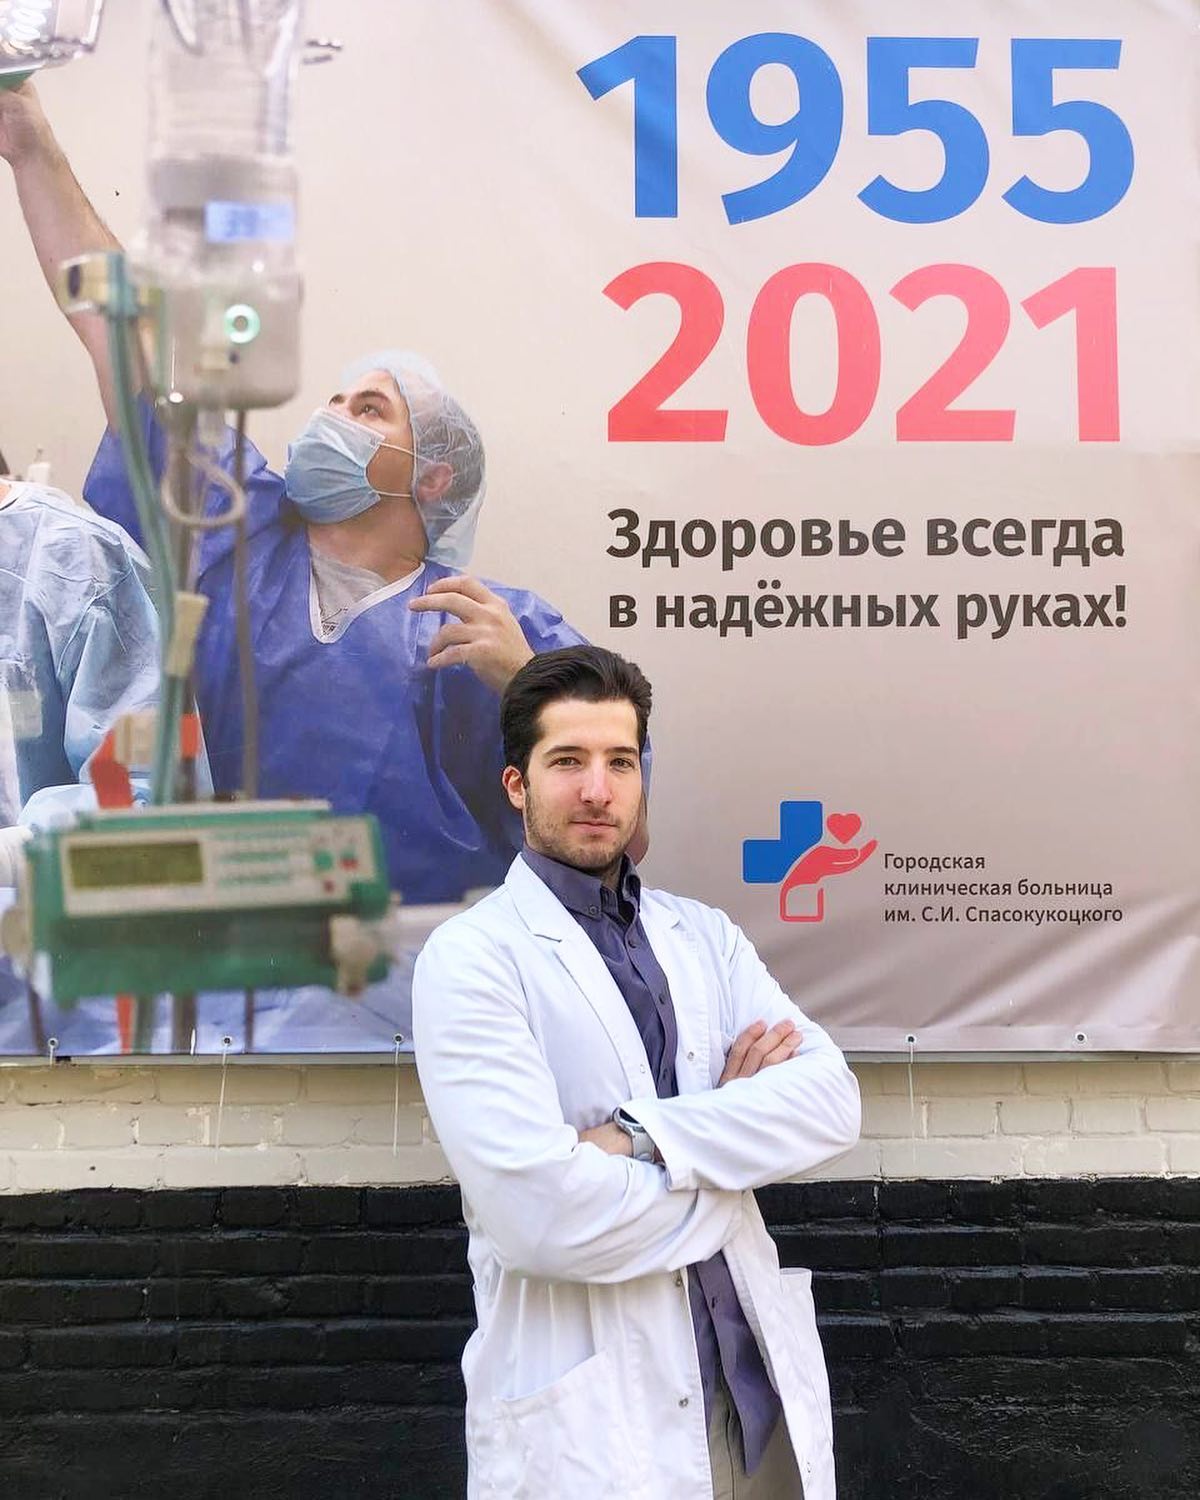 Праправнук Спасокукоцкого теперь работает в больнице на Вучетича